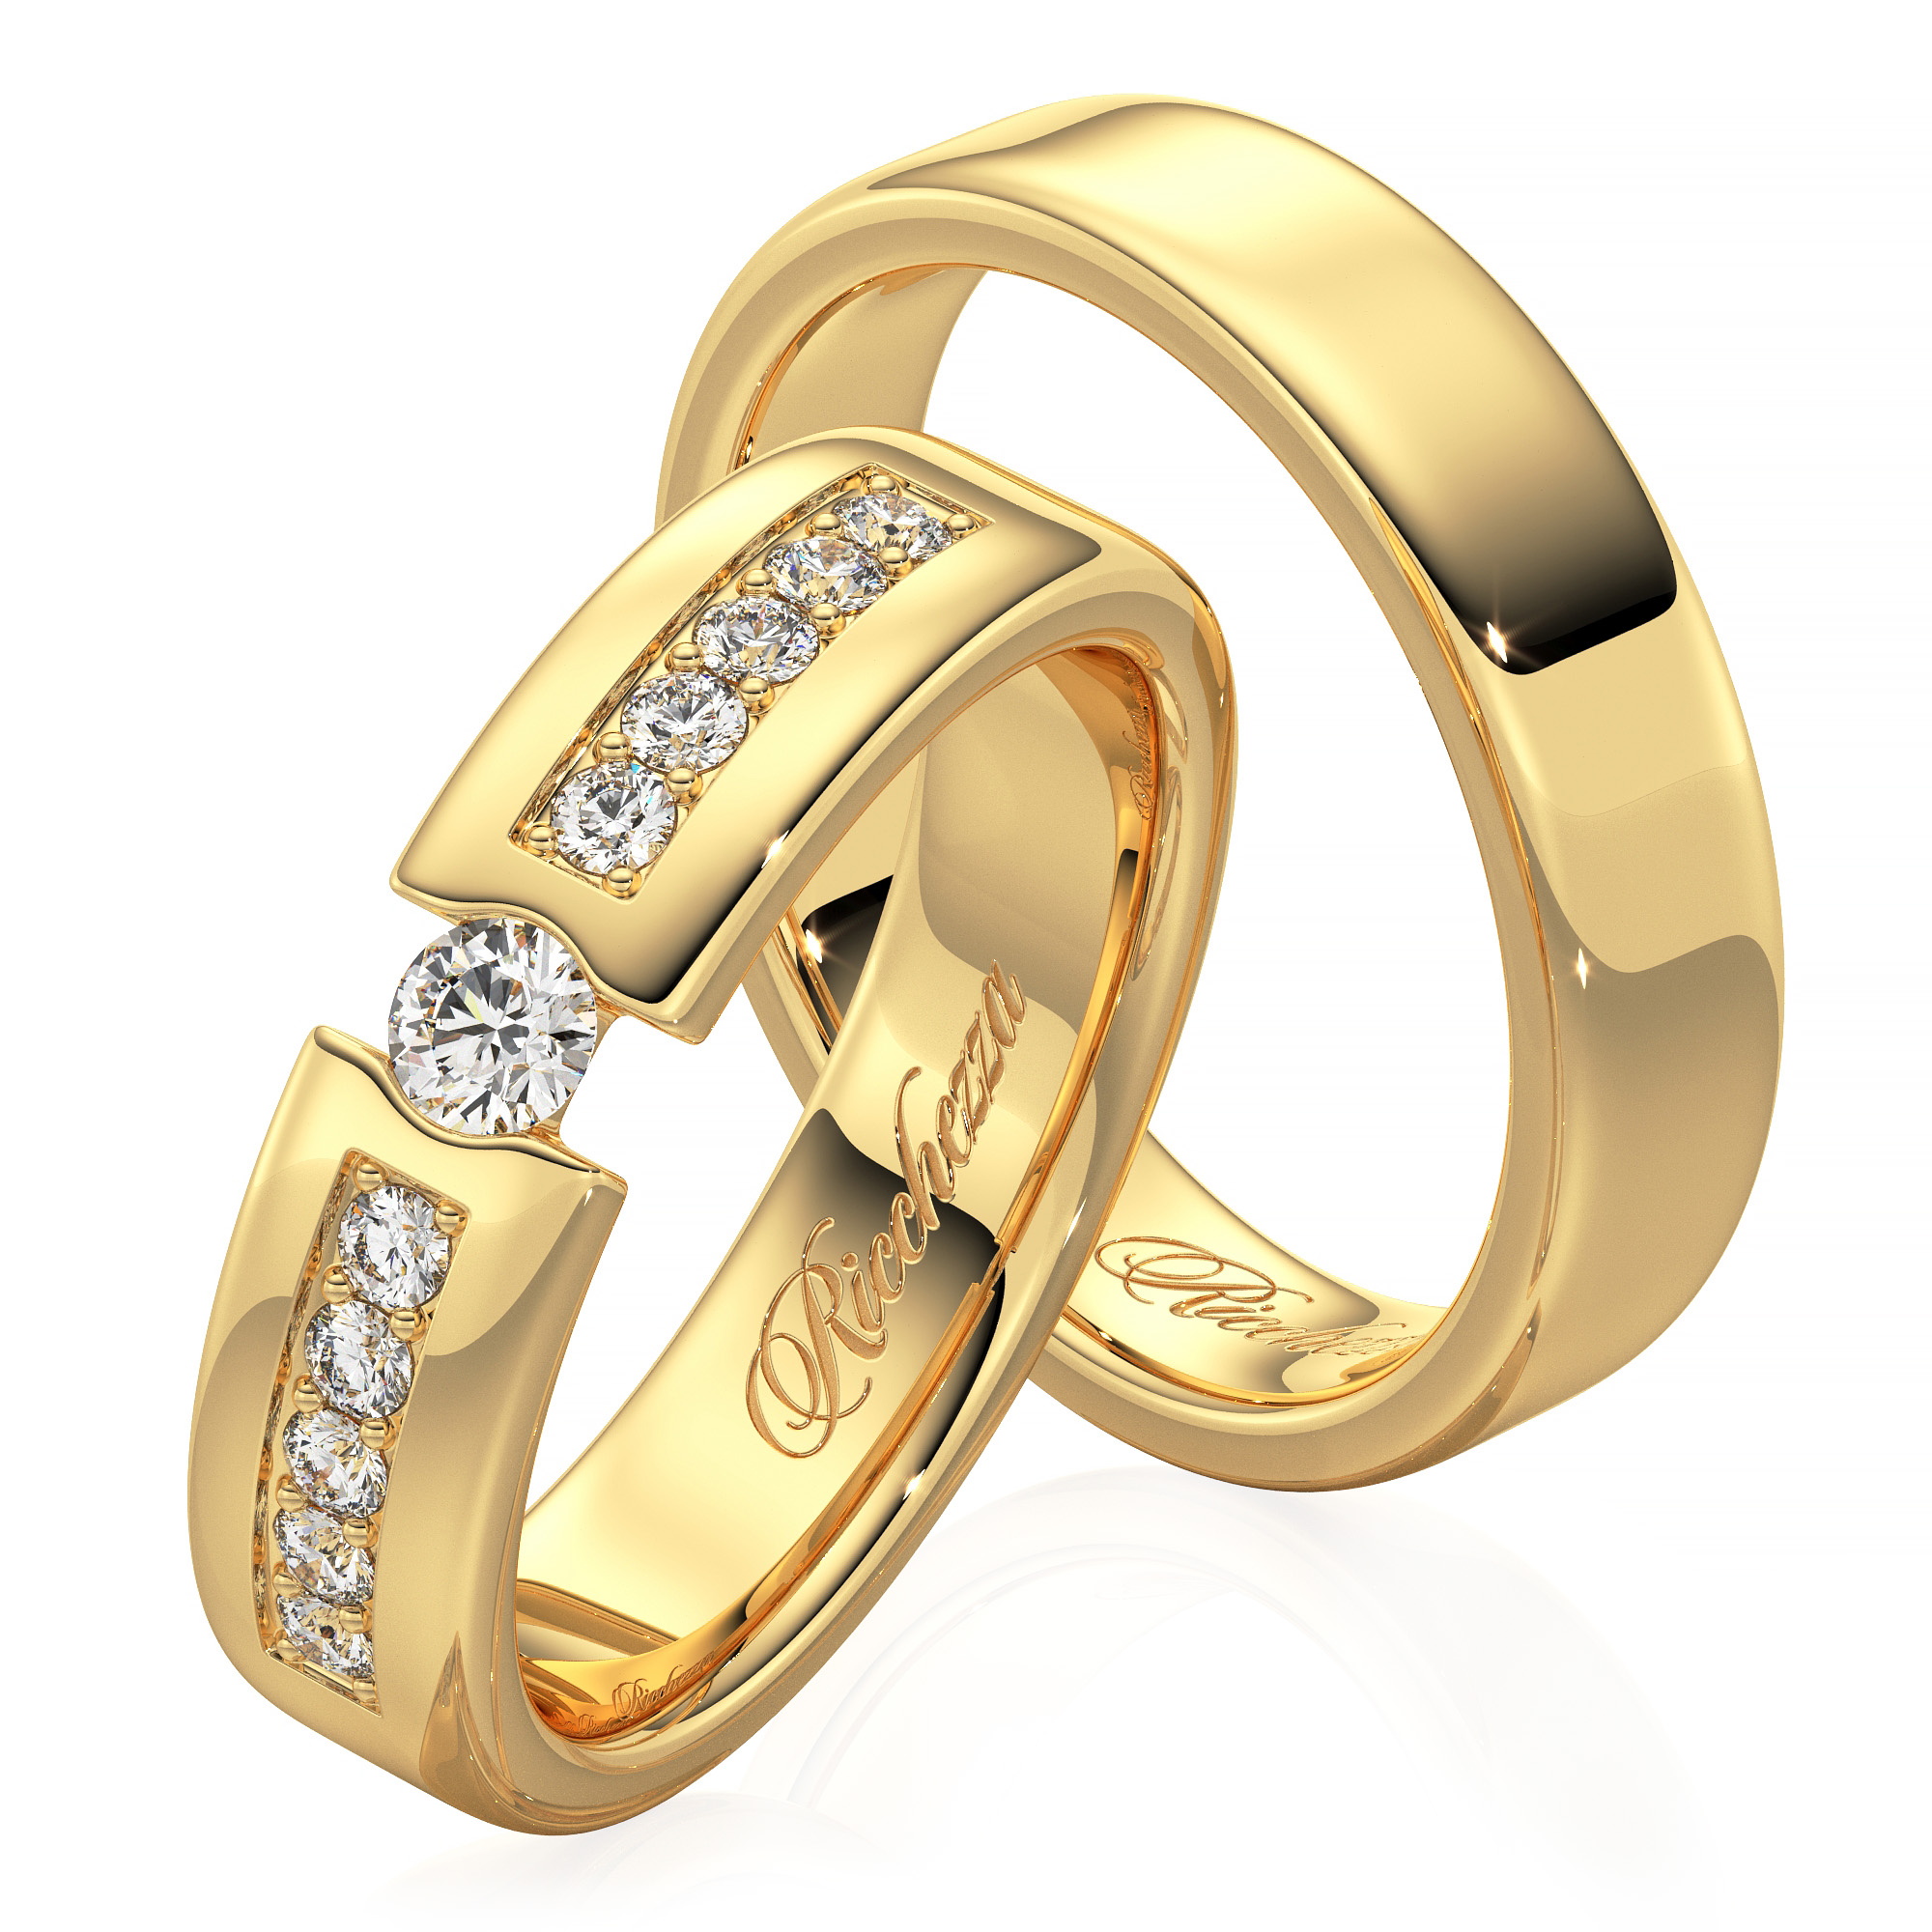 Золотые кольца тюмень. Обручальные кольца парные золотые Санлайт. Санлайт обручальные кольца парные. Золото Санлайт обручалка кольца. Санлайт кольца обручальные золотые.